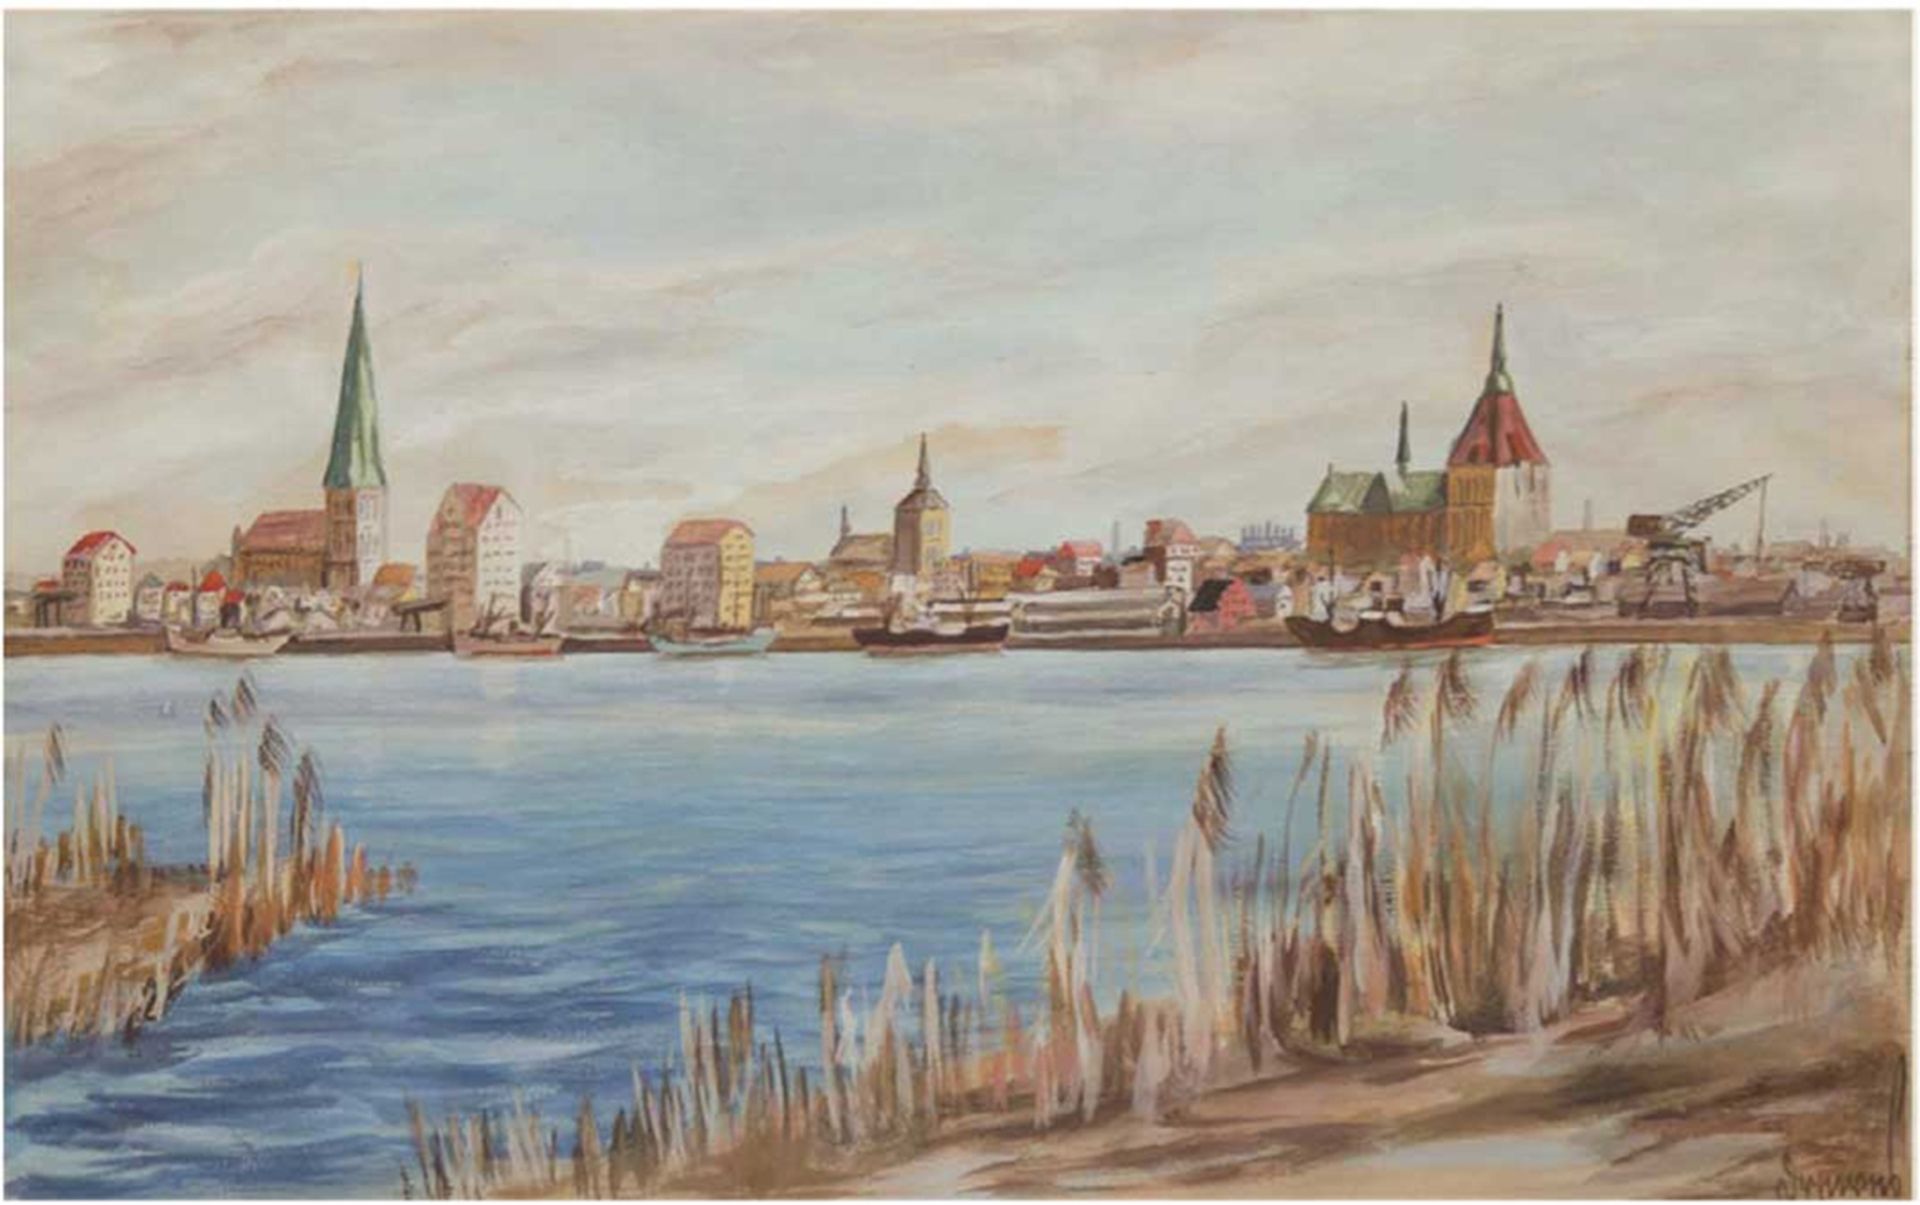 Künstler des 20. Jh. "Stadtansicht von Rostock", Aquarell, undeutlich sign., 31x49 cm, Passepartout